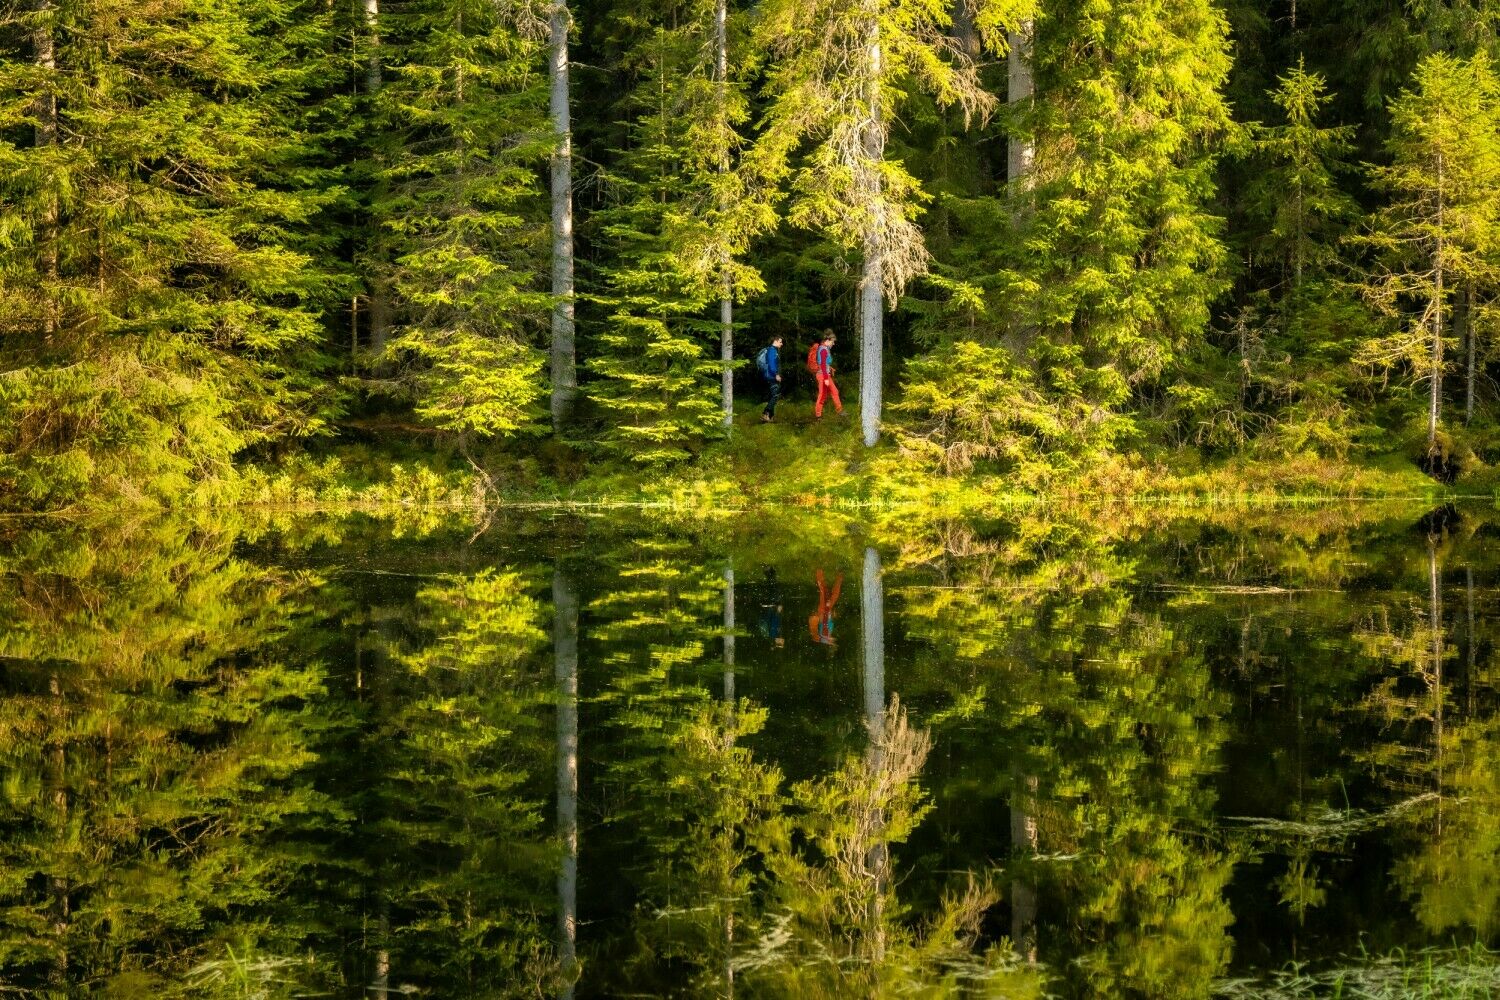 Spiegelung in einem See im Nordschwarzwald, aufgenommen durch Landschaftsfotograf und Foto-Coach Alex Kijak